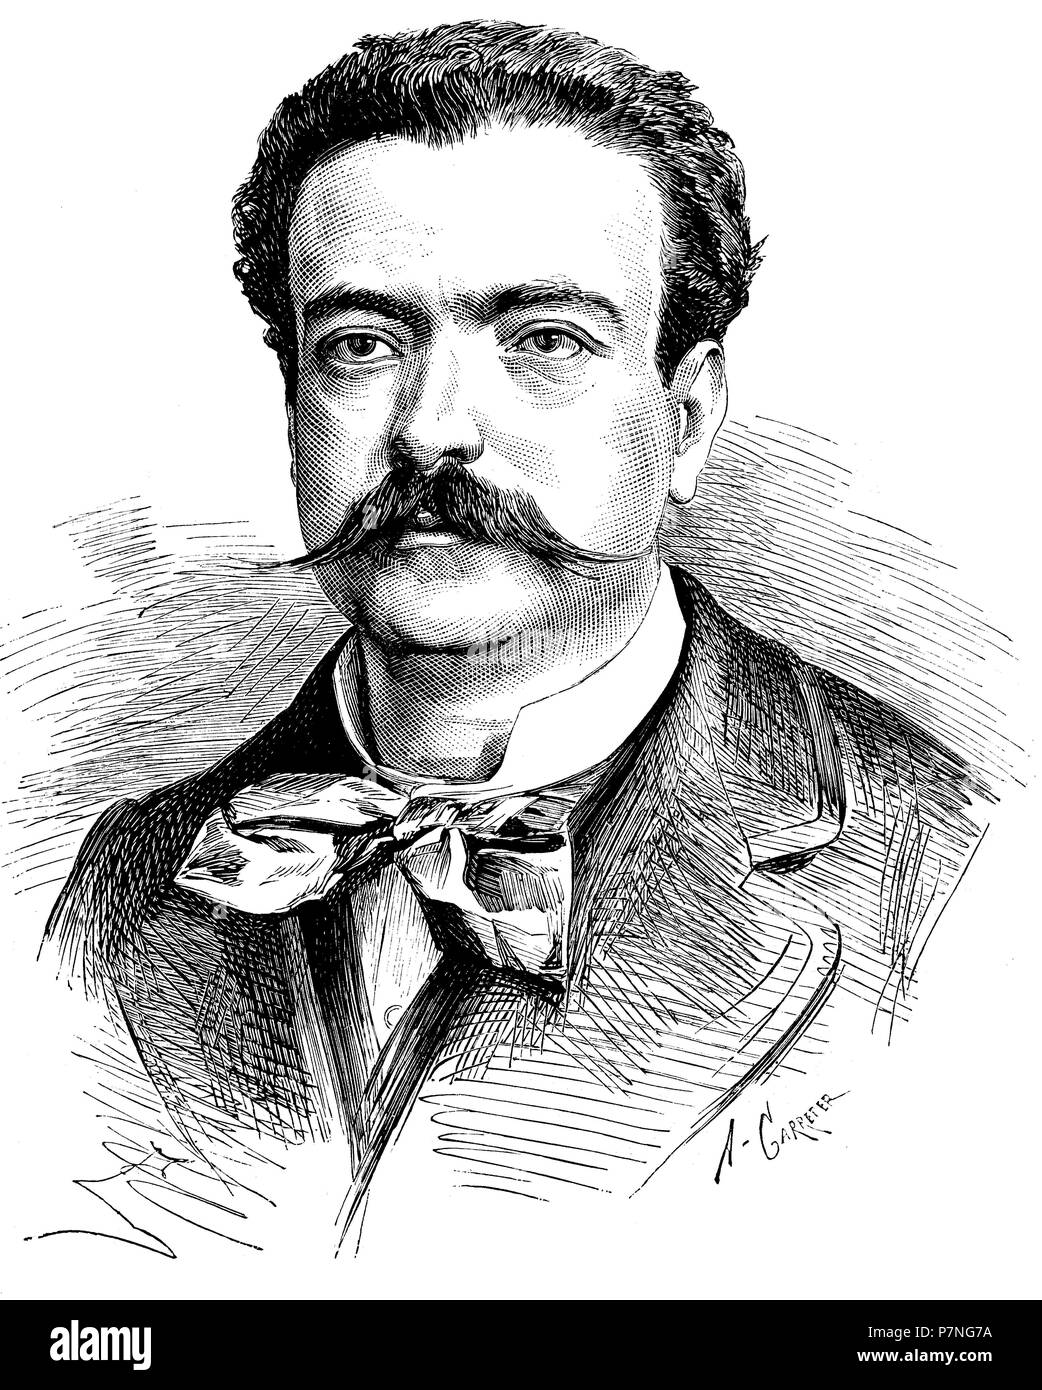 Antonio Vico Pintós (1840-1902), actor y escritor español. Grabado de 1880. Stock Photo